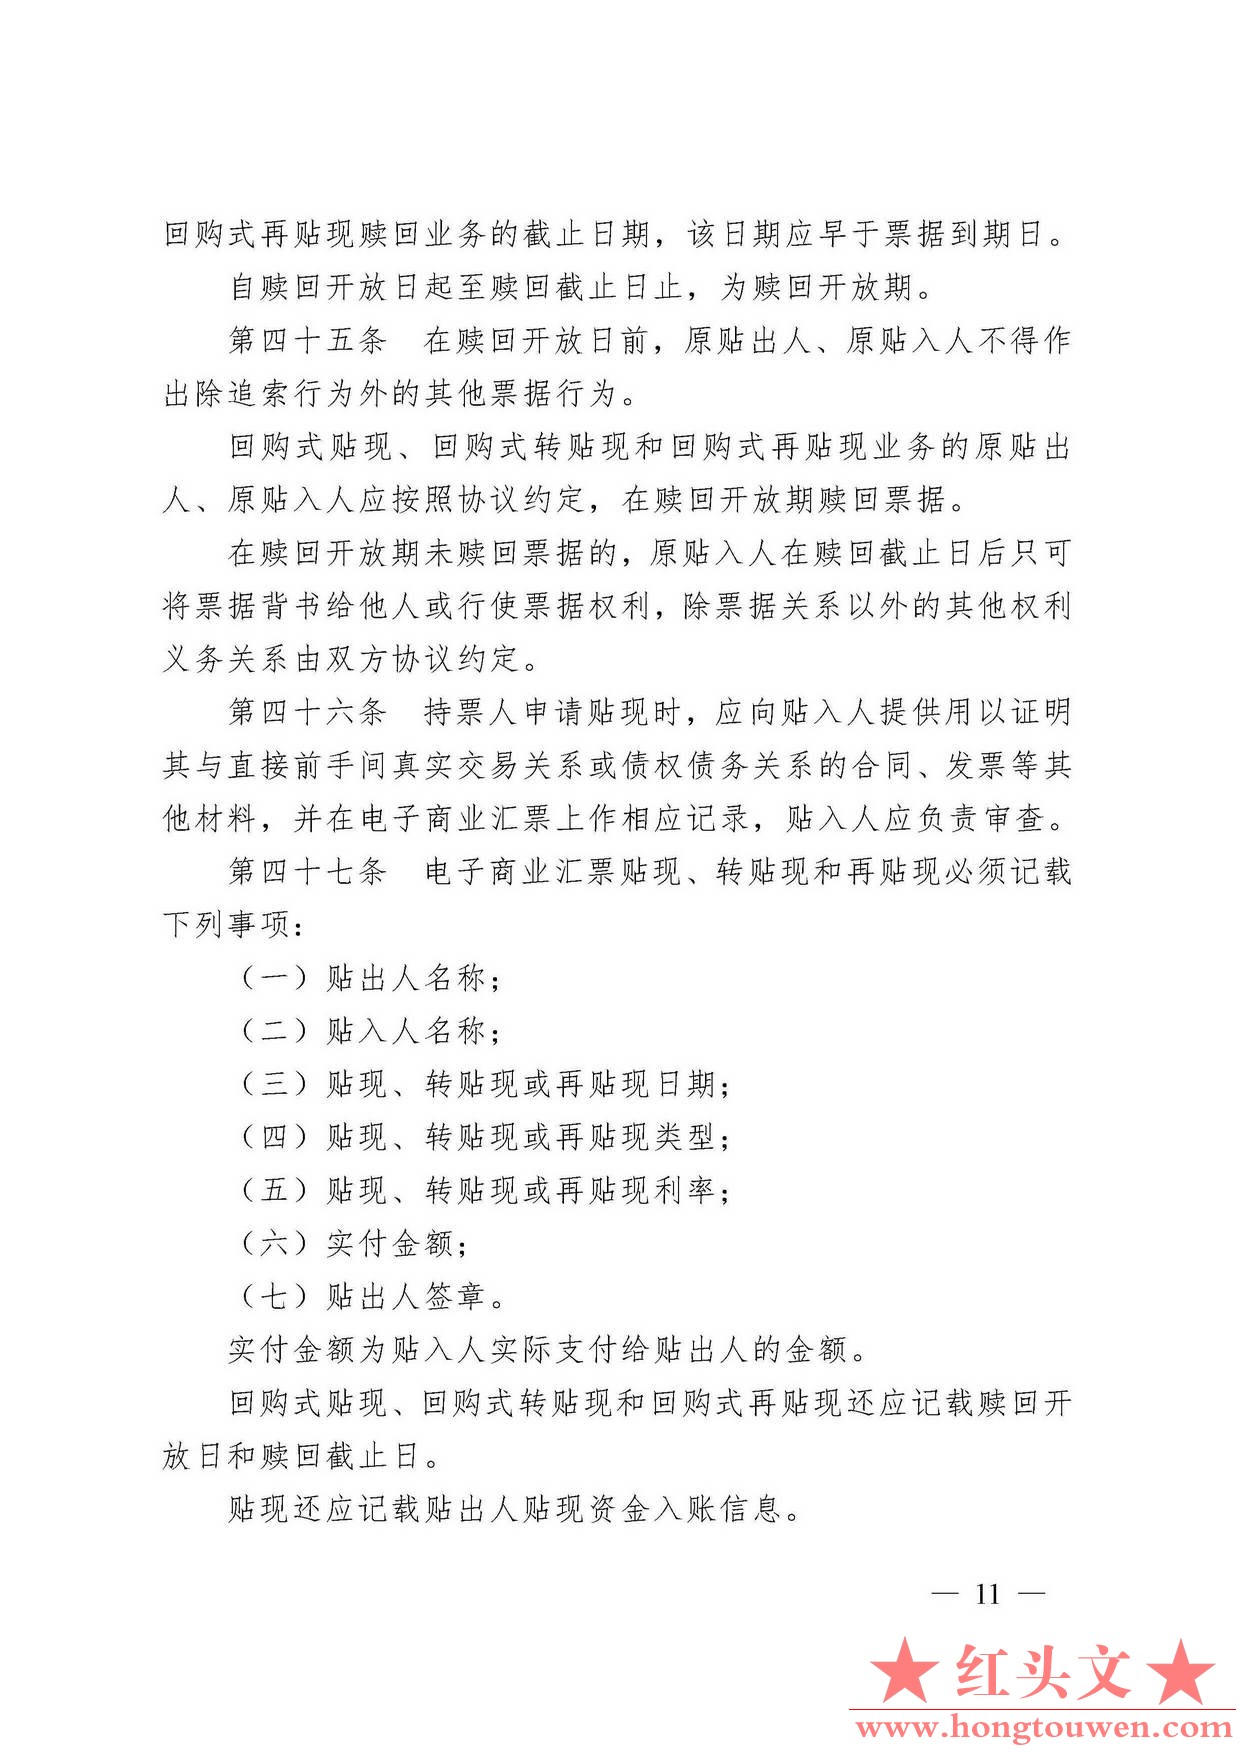 中国人民银行令[2009]2号-电子商业汇票管理办法_页面_11.jpg